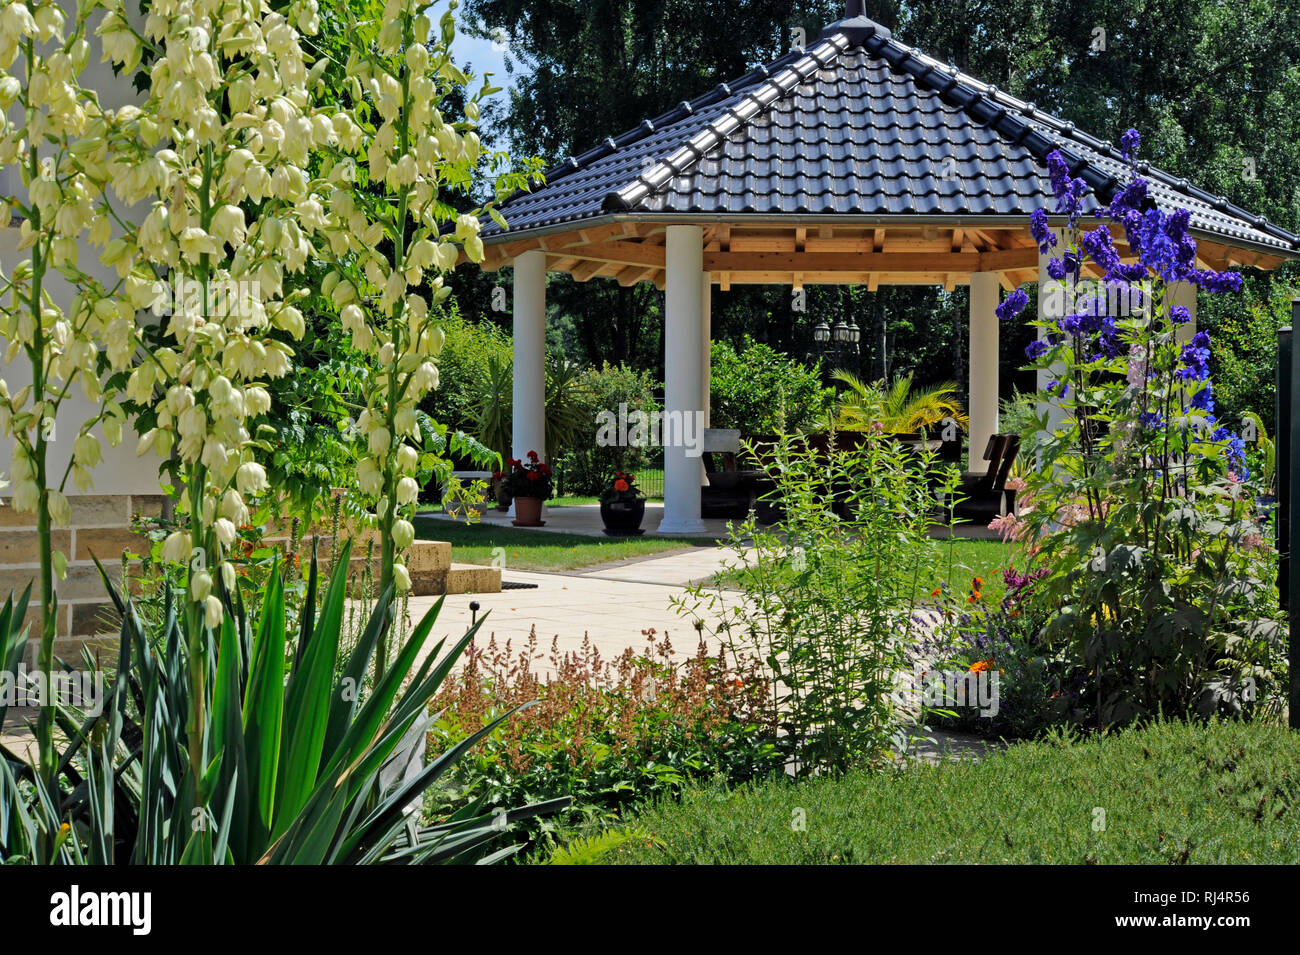 Romantischer Landhausgarten mit attraktiven Schmuckstauden, Yucca, Rittersporn, Gartenpavillon, Stock Photo